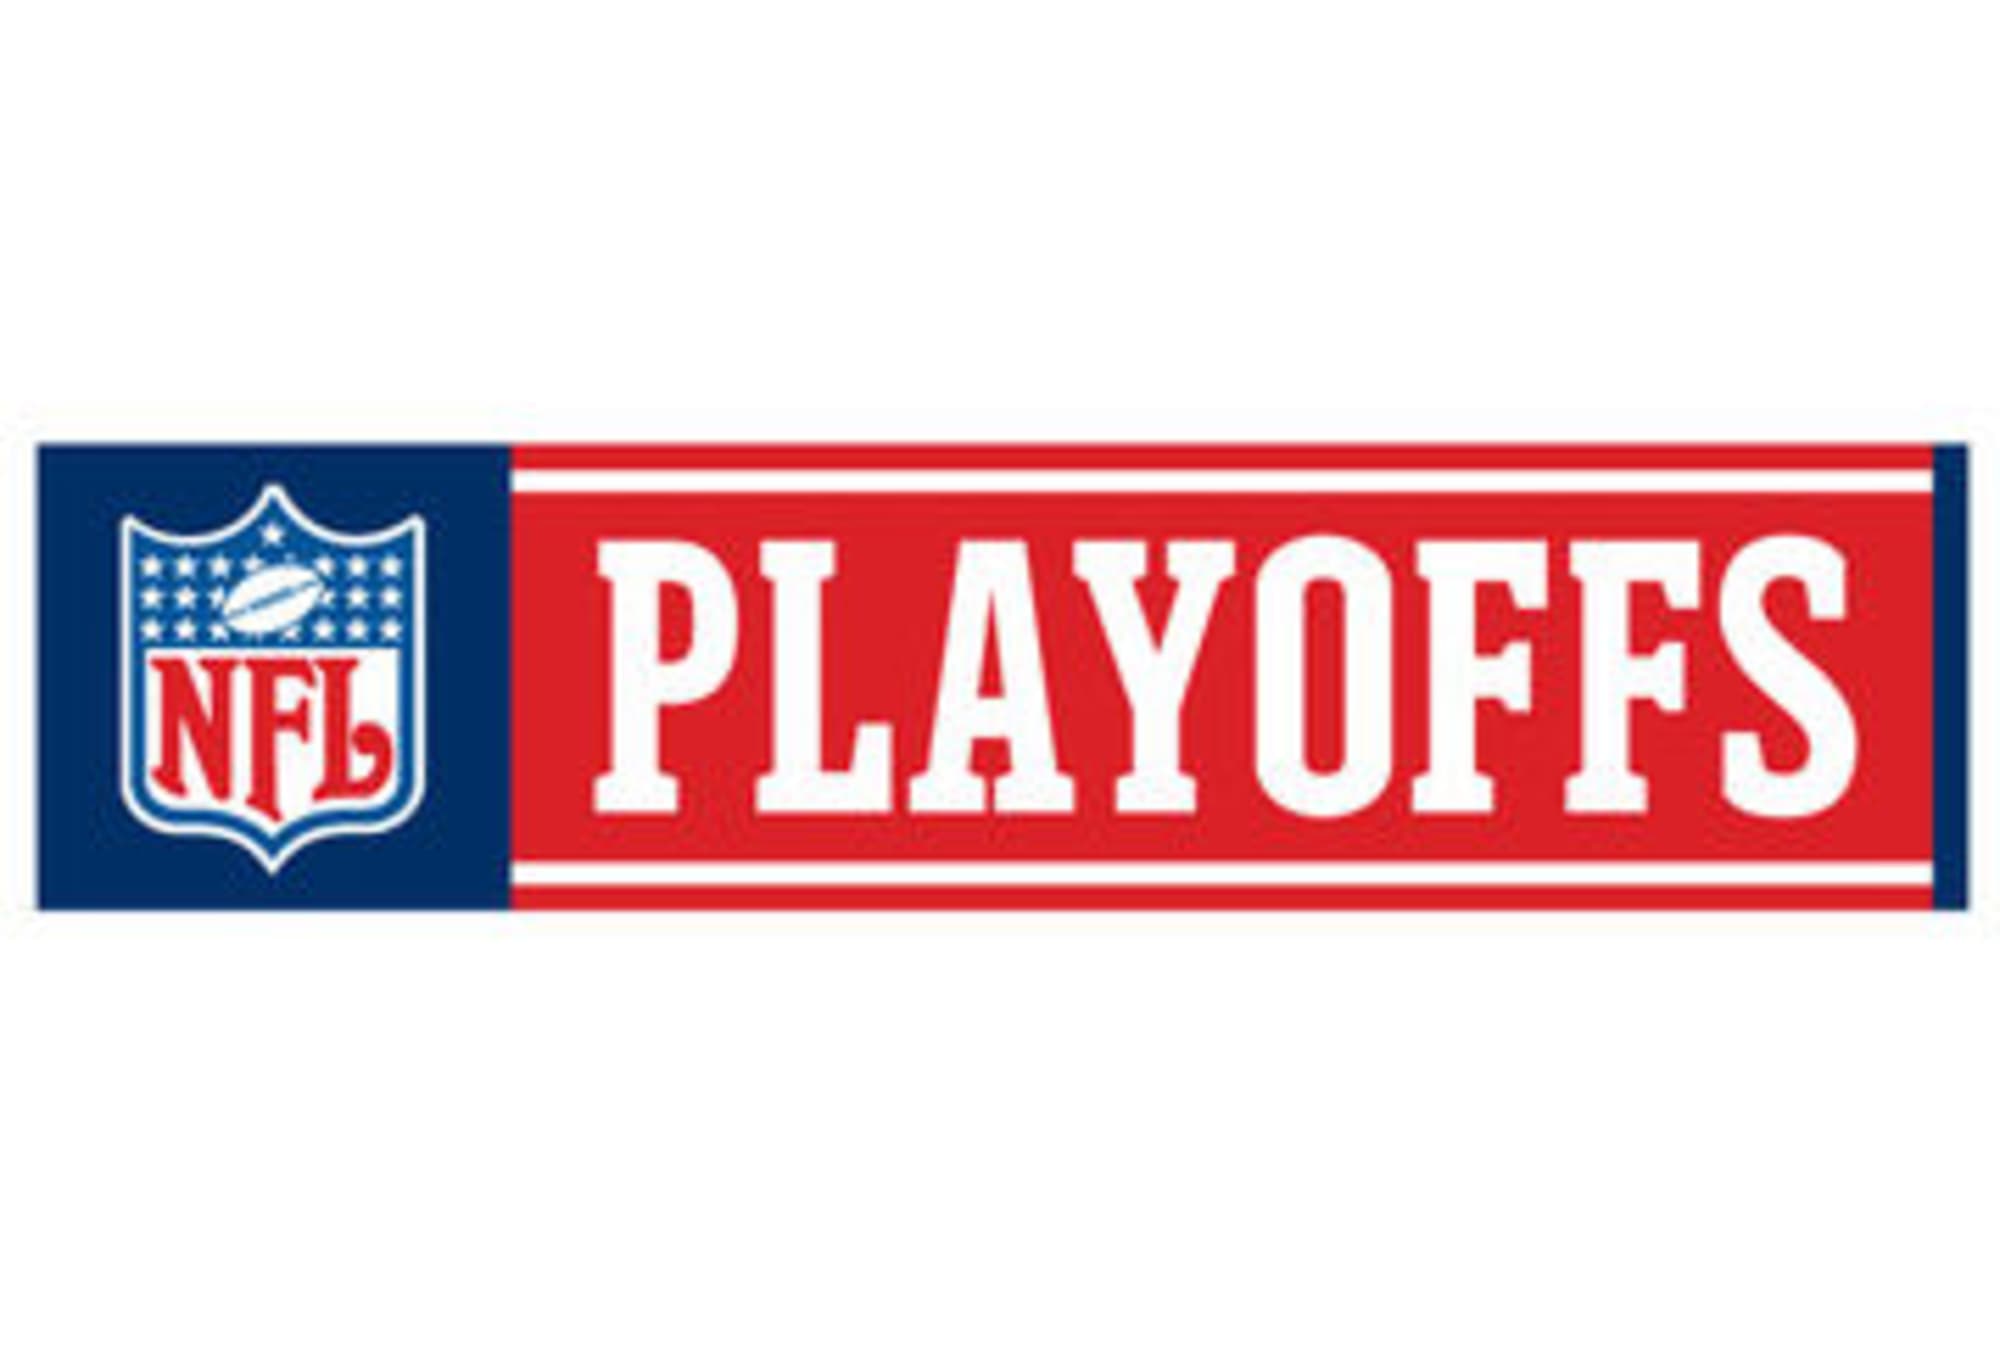 NFL Playoffs Bracket Road to Super Bowl XLVII